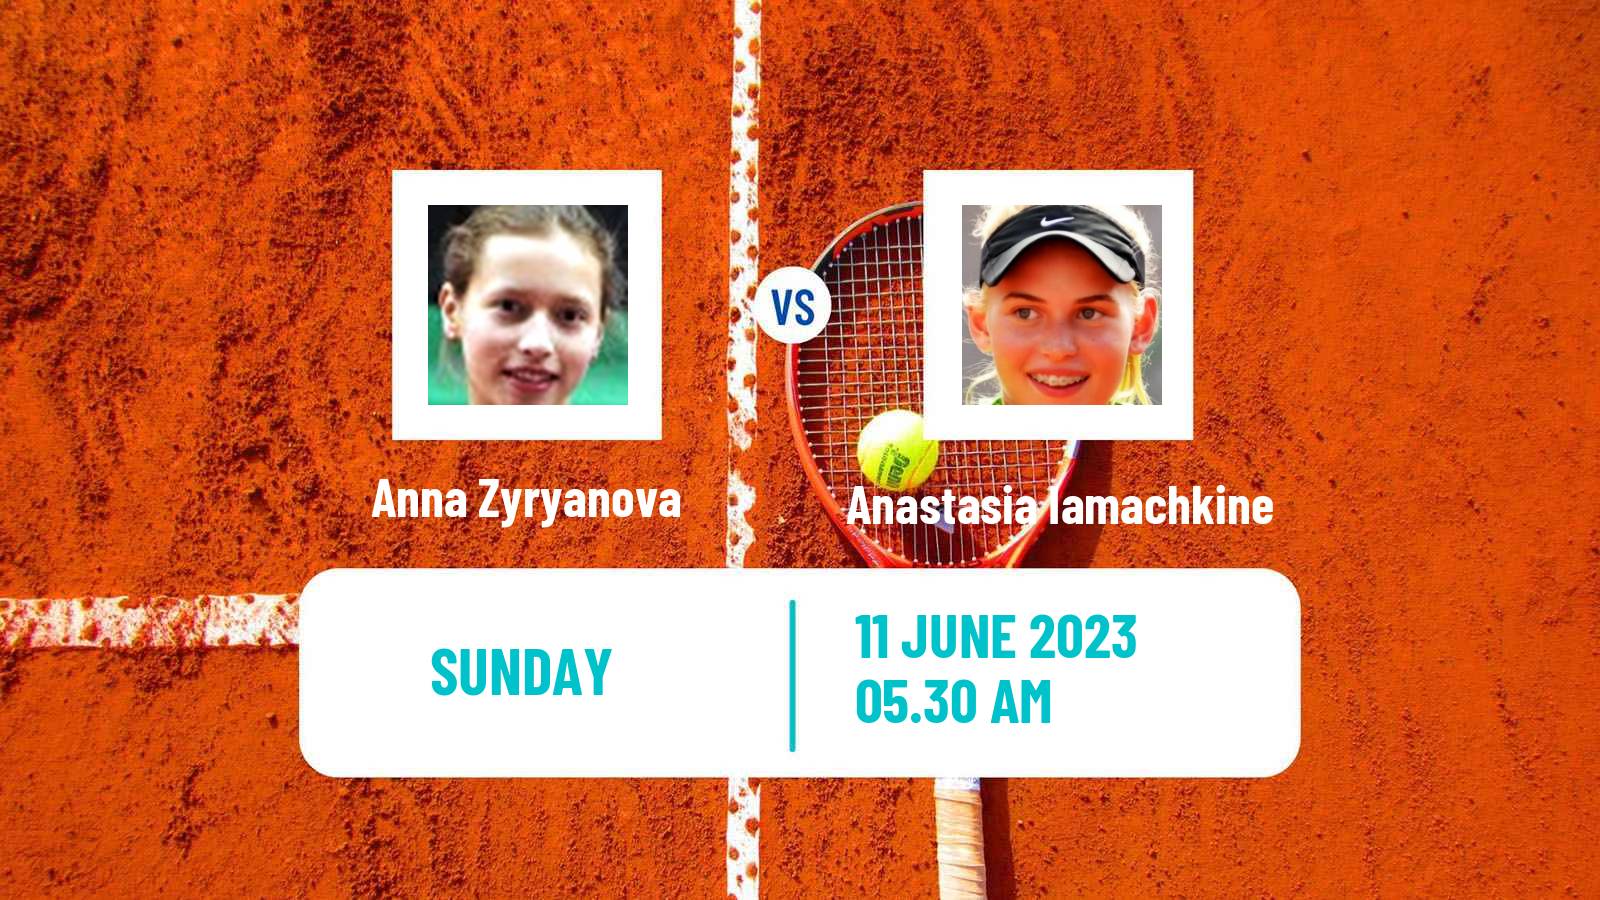 Tennis ITF W15 Kocevje Women Anna Zyryanova - Anastasia Iamachkine